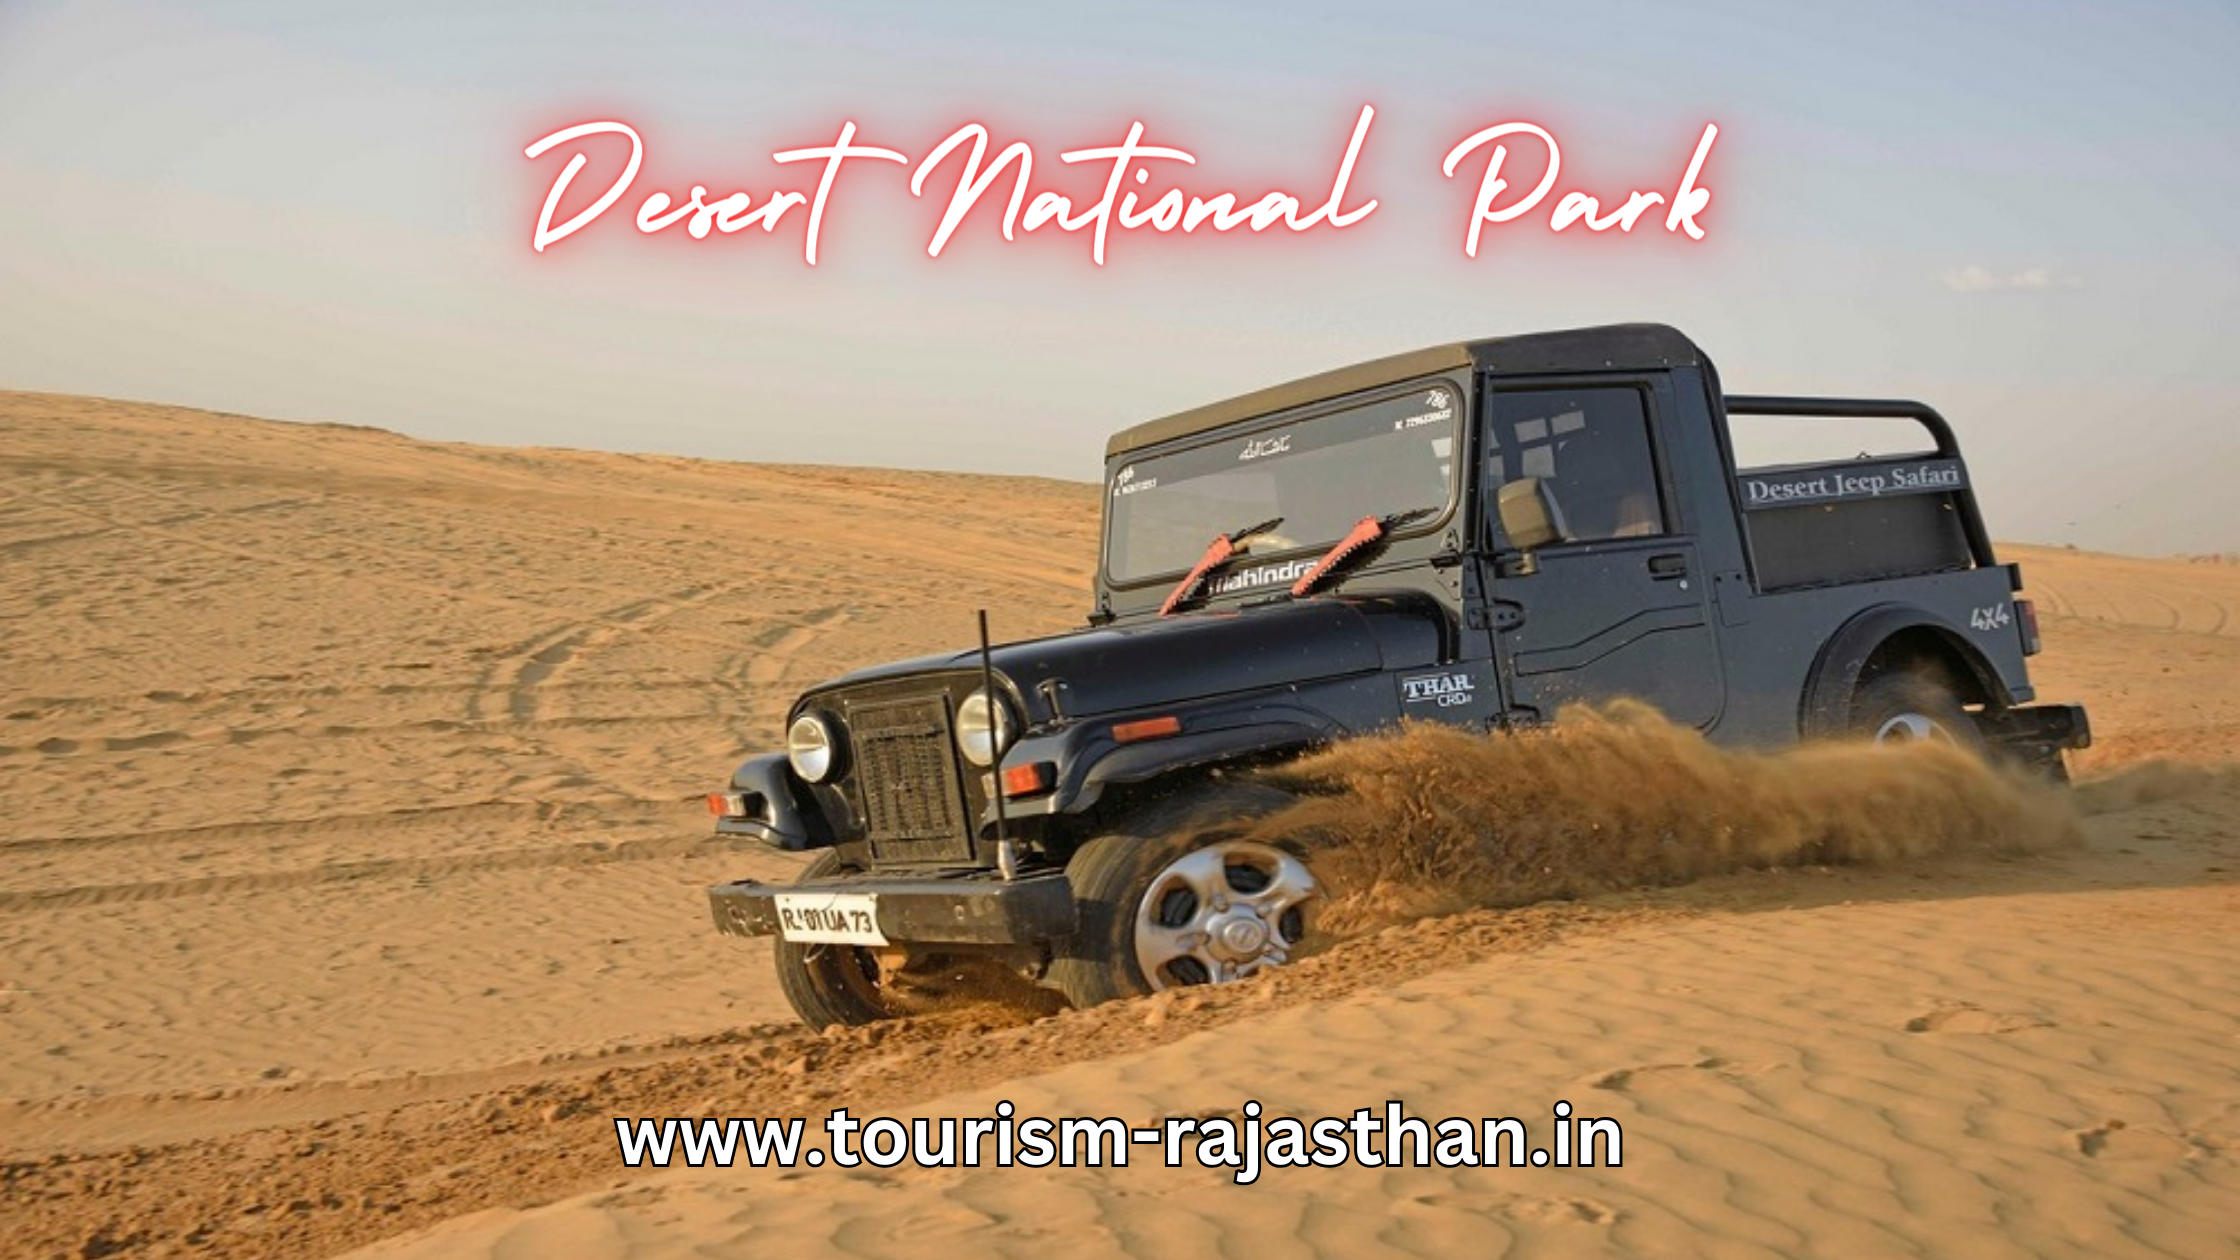 desert national park